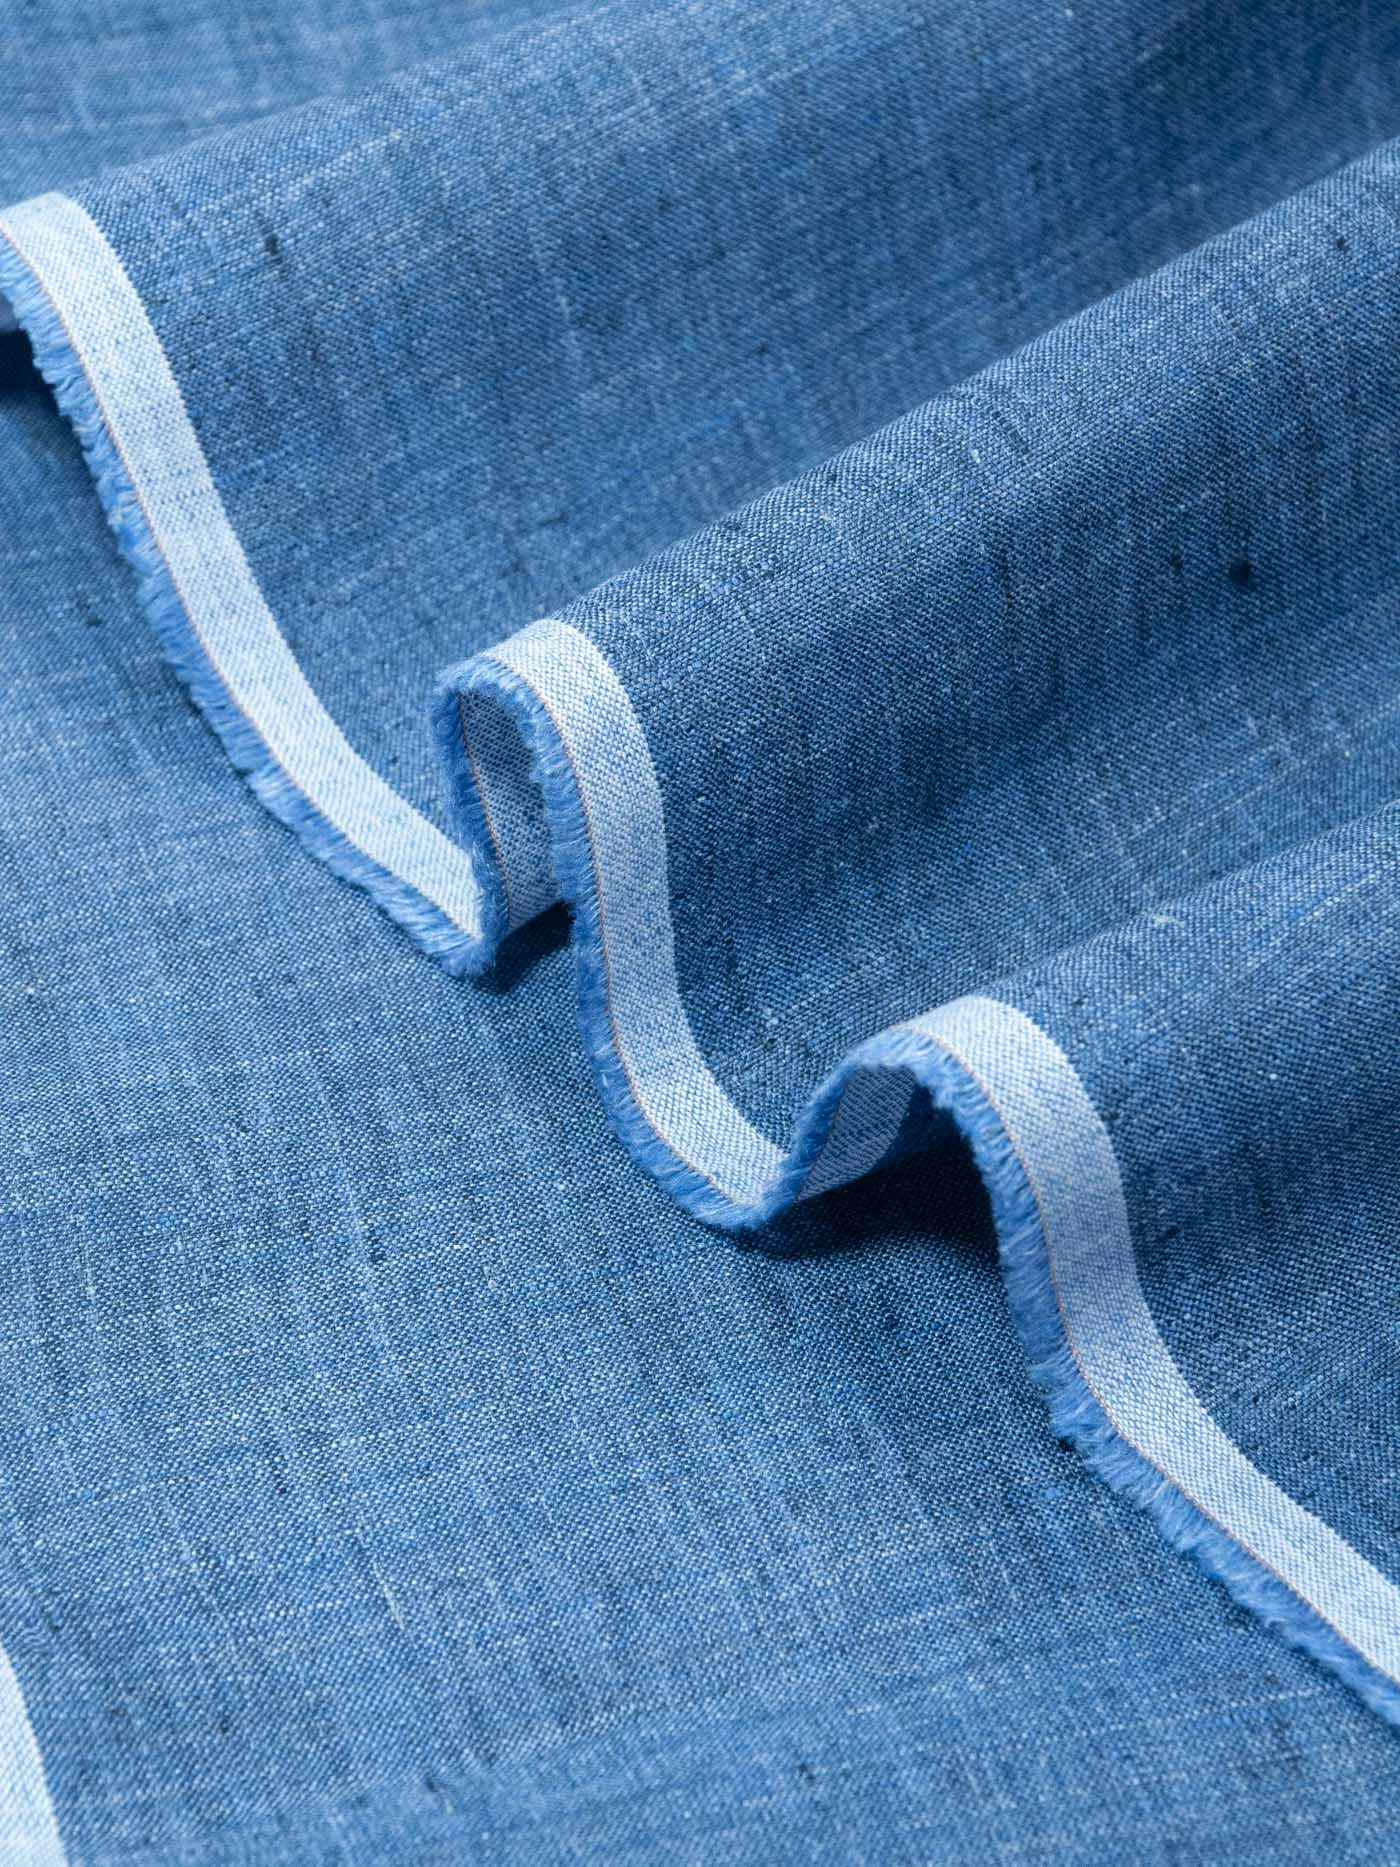 Лен Loro Piana, цвет синий джинсовый меланж, 1042210 150см купить в Москве  - цена 3195.00 руб.